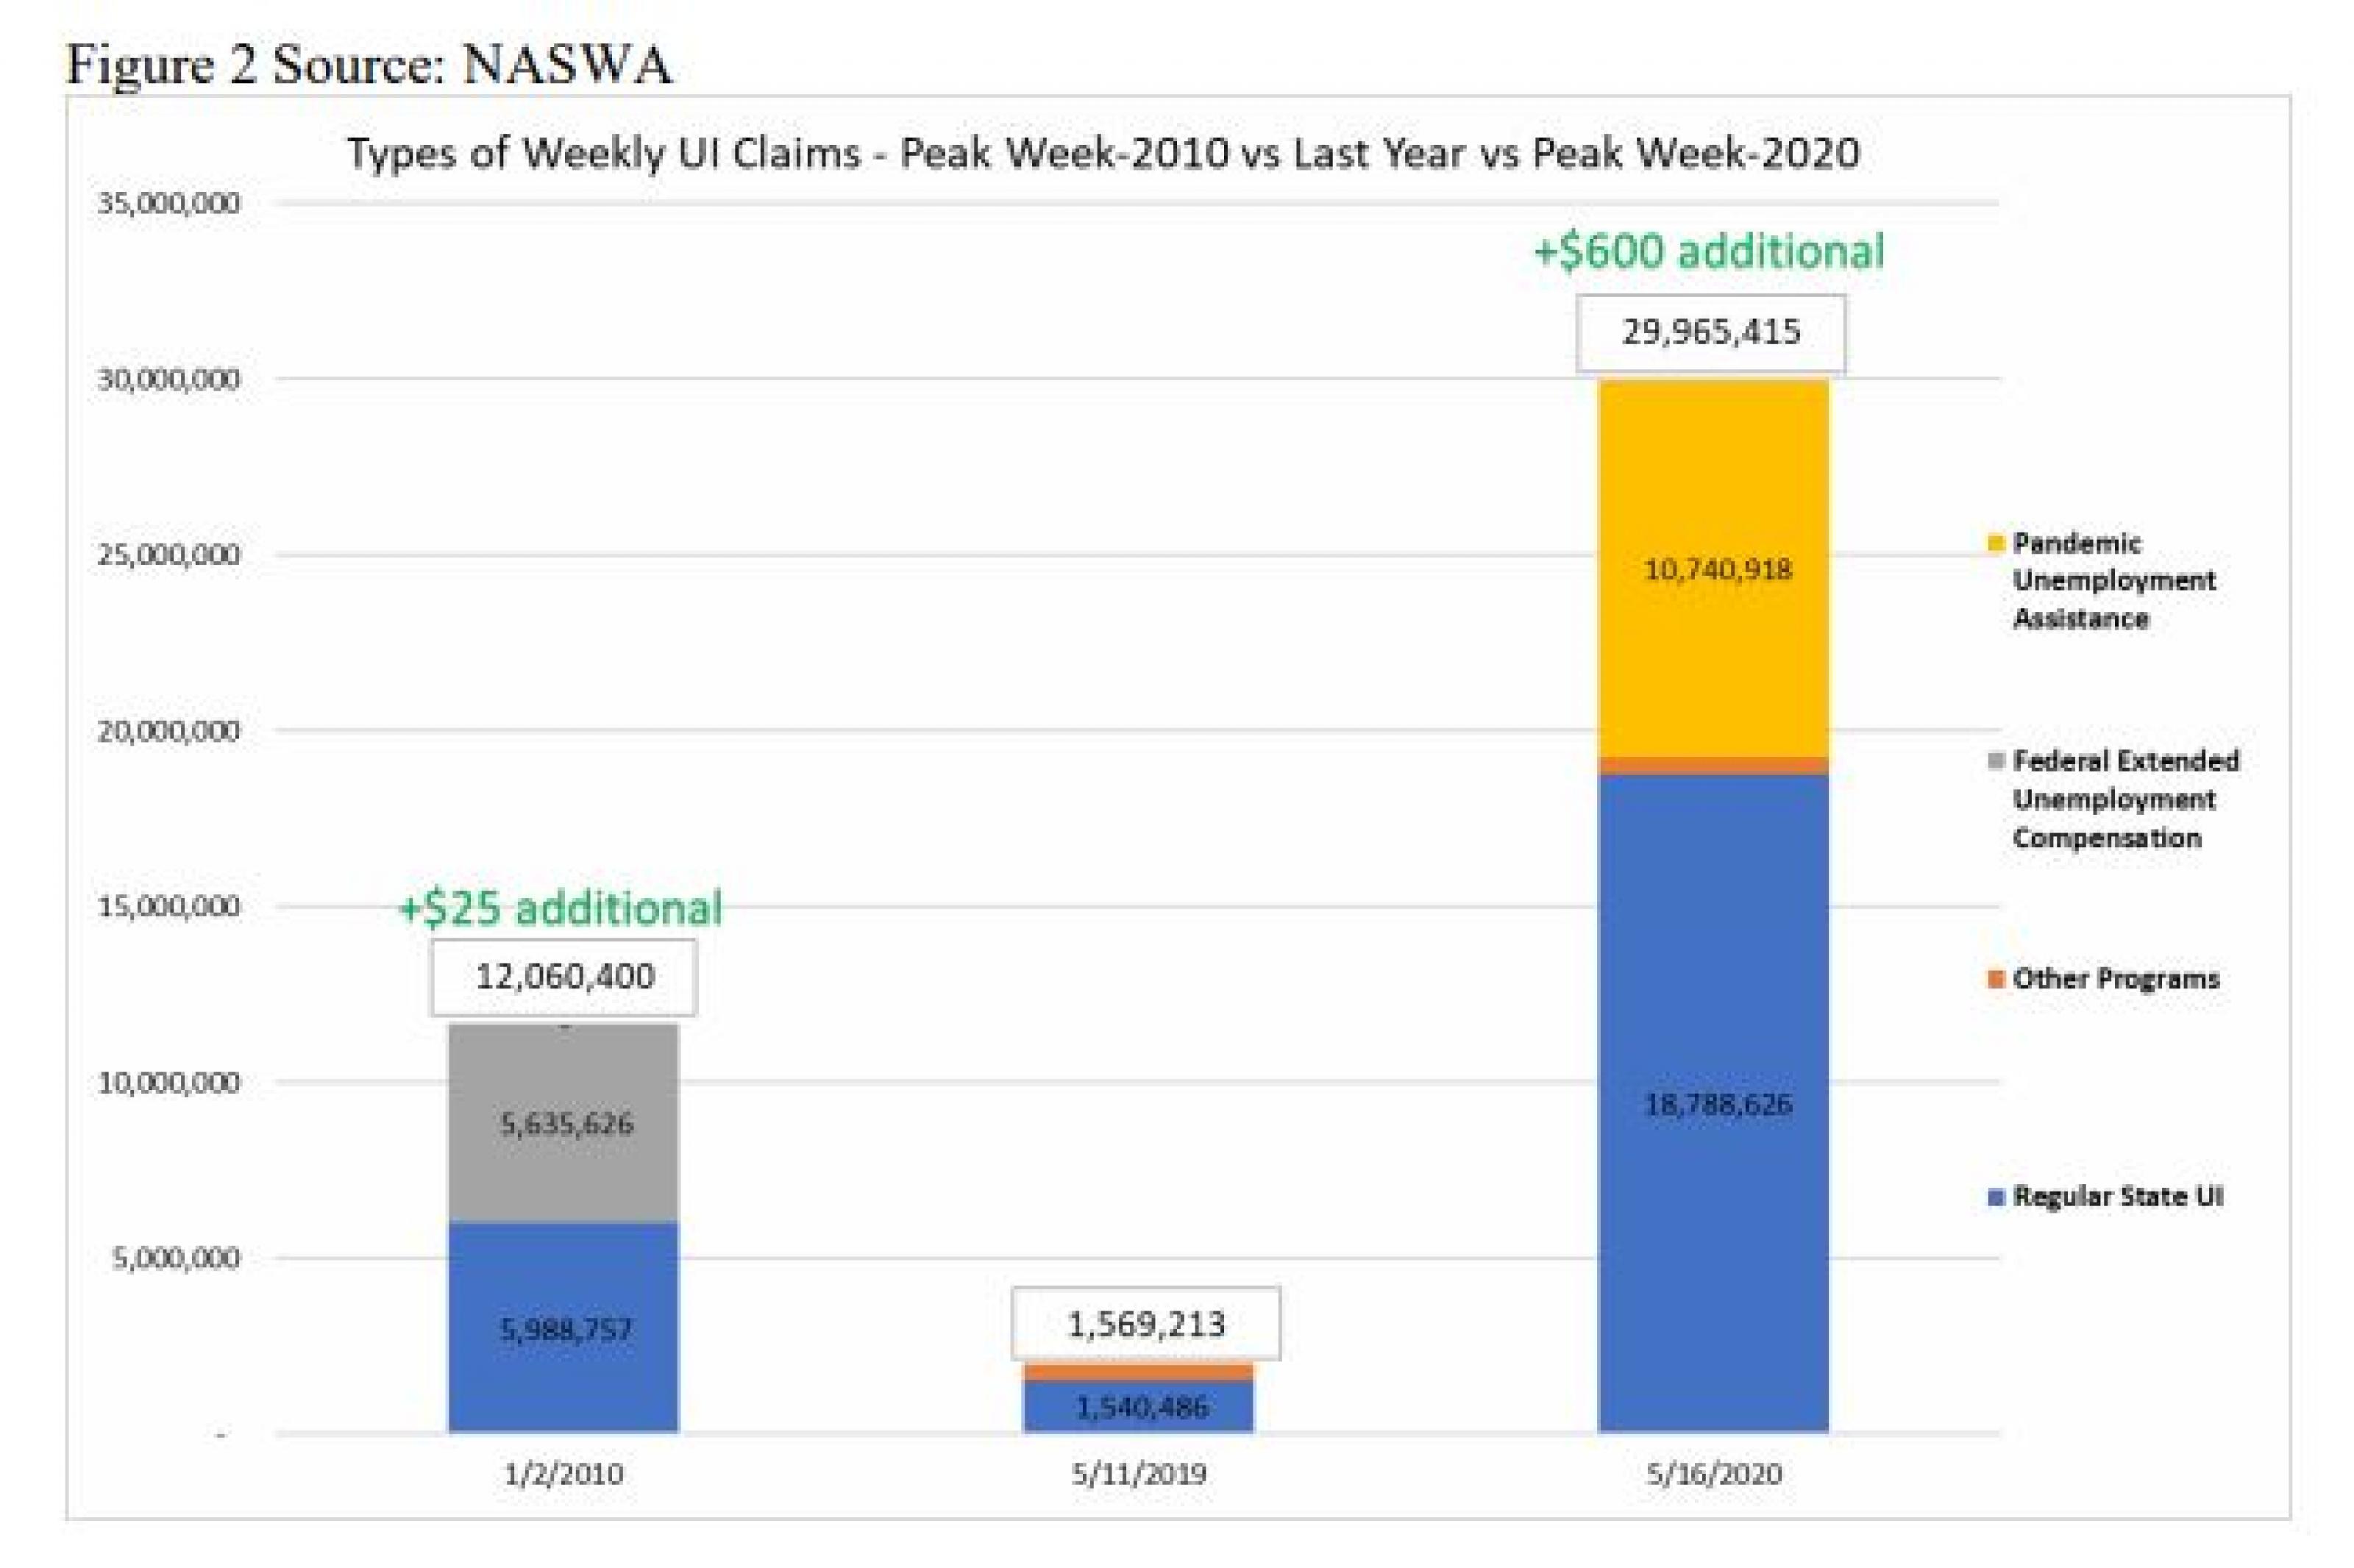 Types of Weekly UI Claims - Peak Week 2010 vs Last Year vs Peak Week 2020